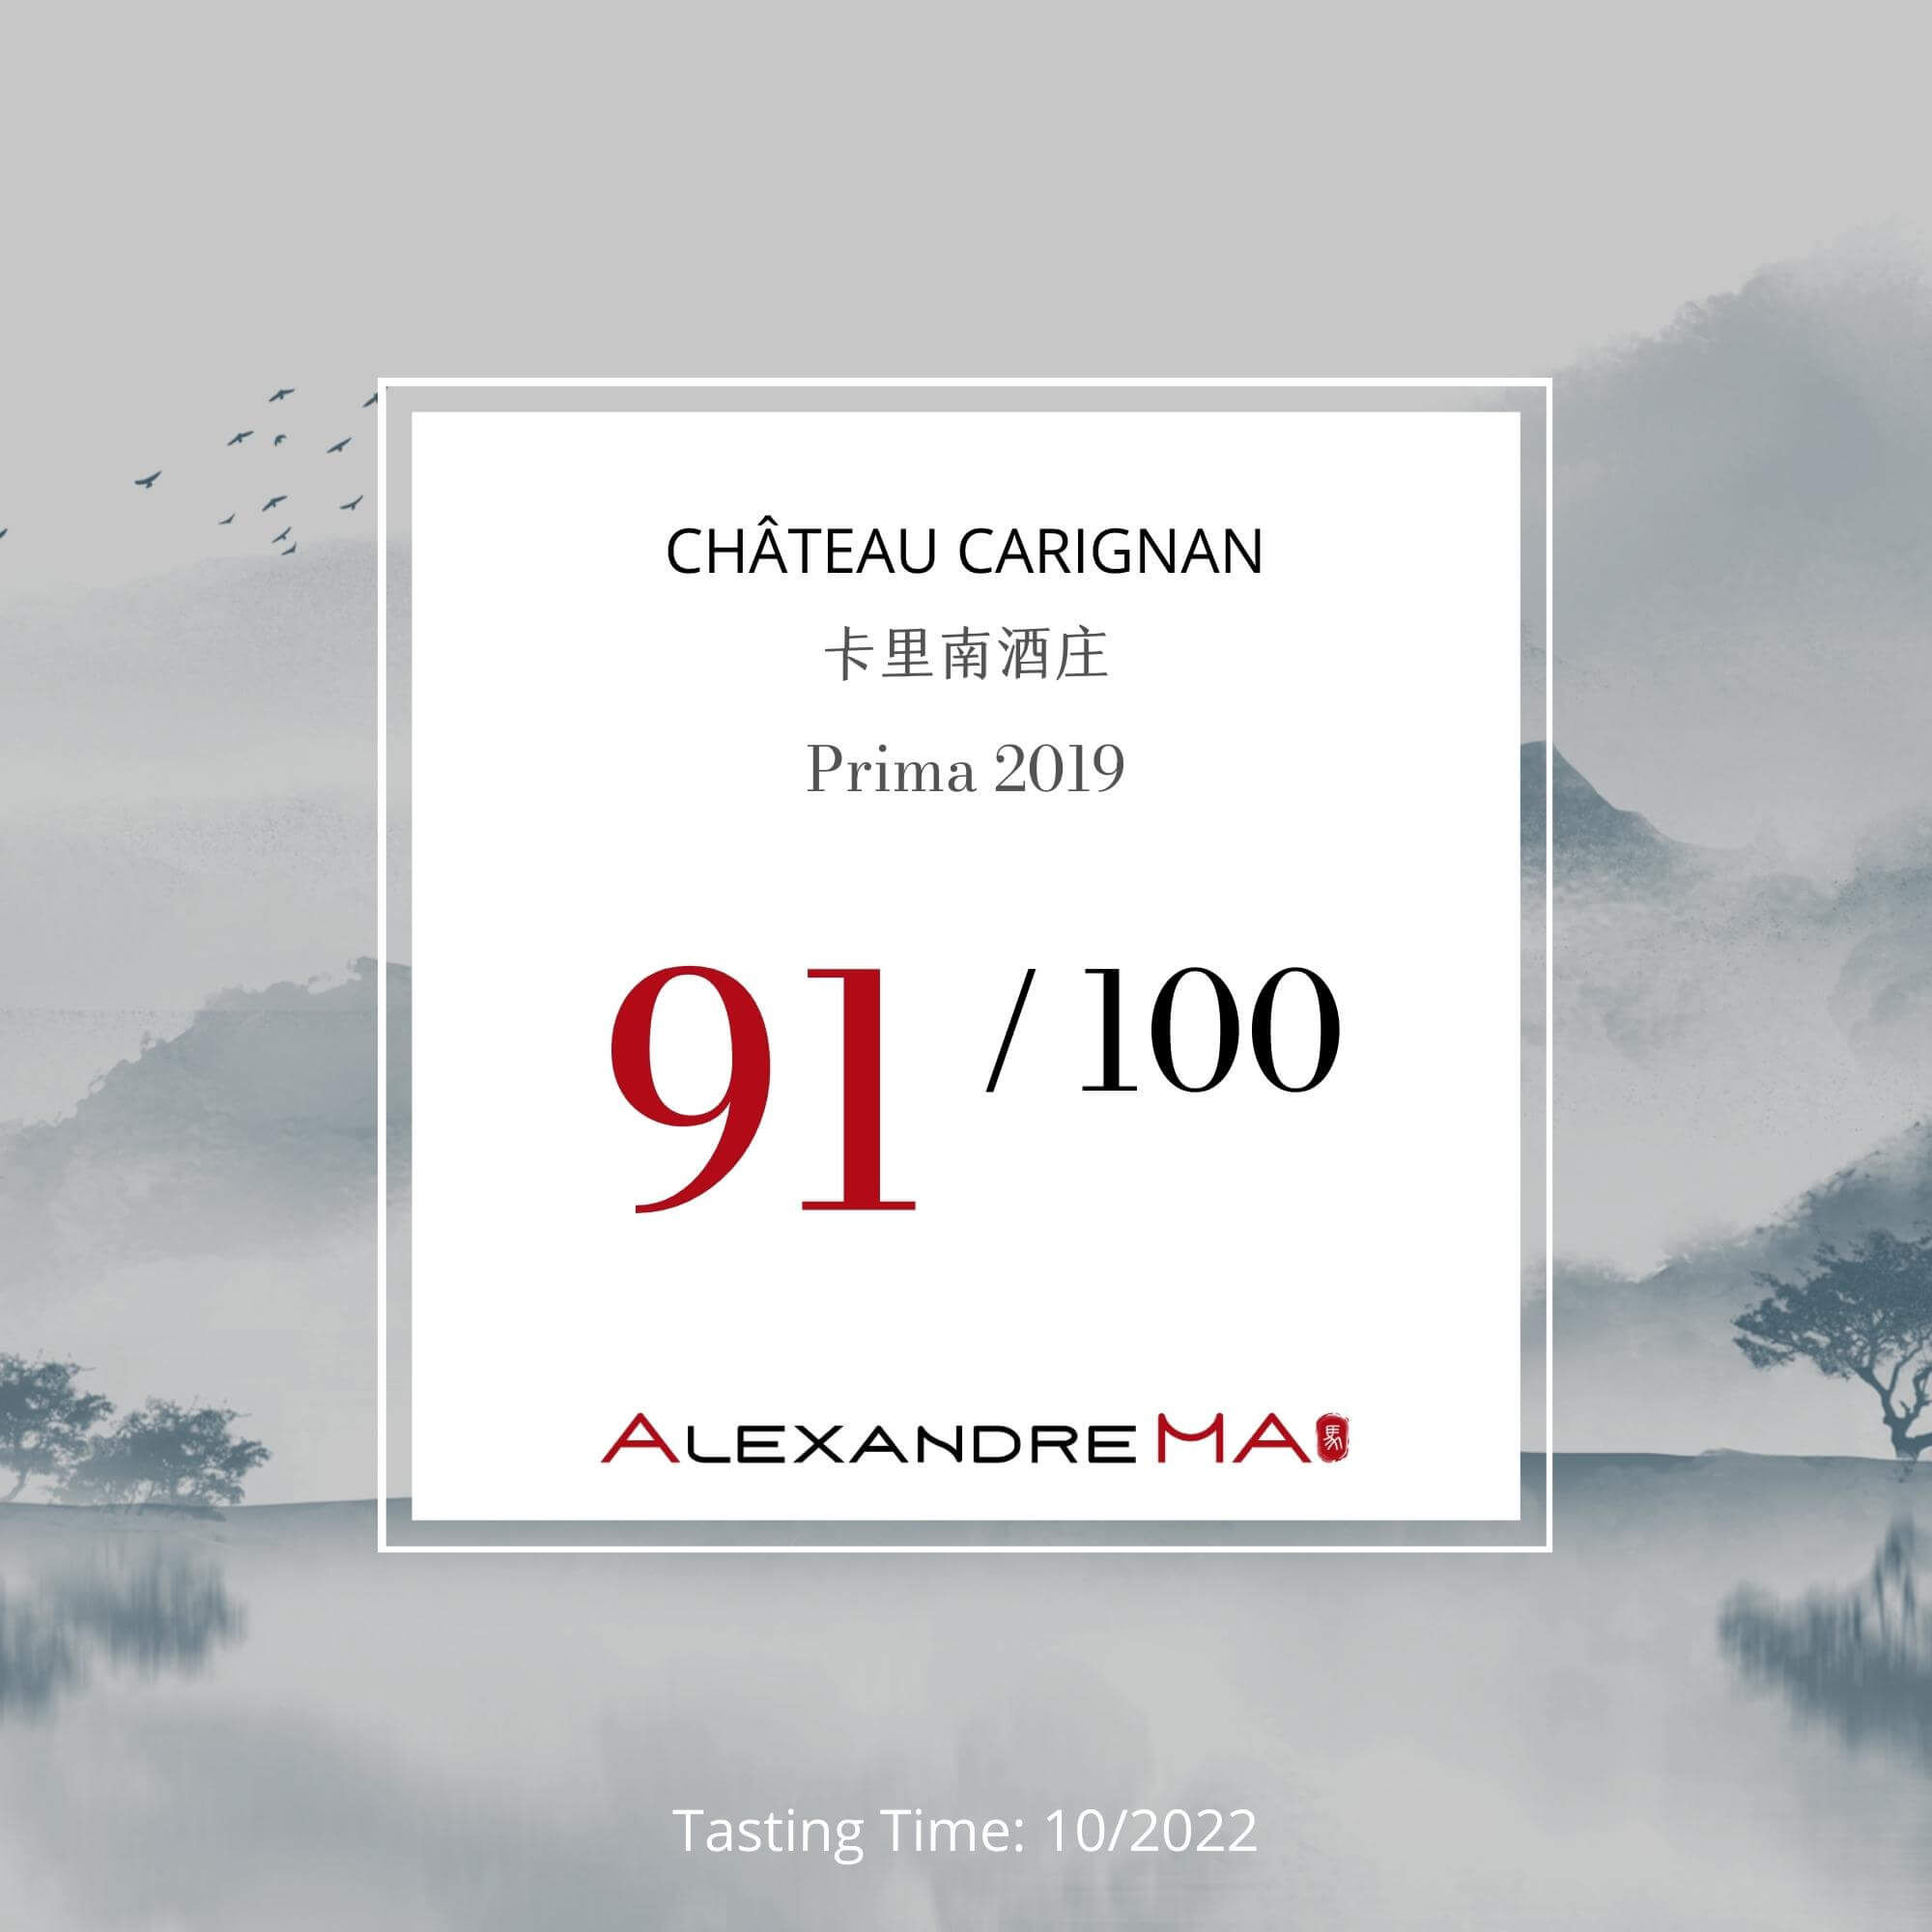 Château Carignan 2019 卡里南酒庄 Prima - Alexandre Ma